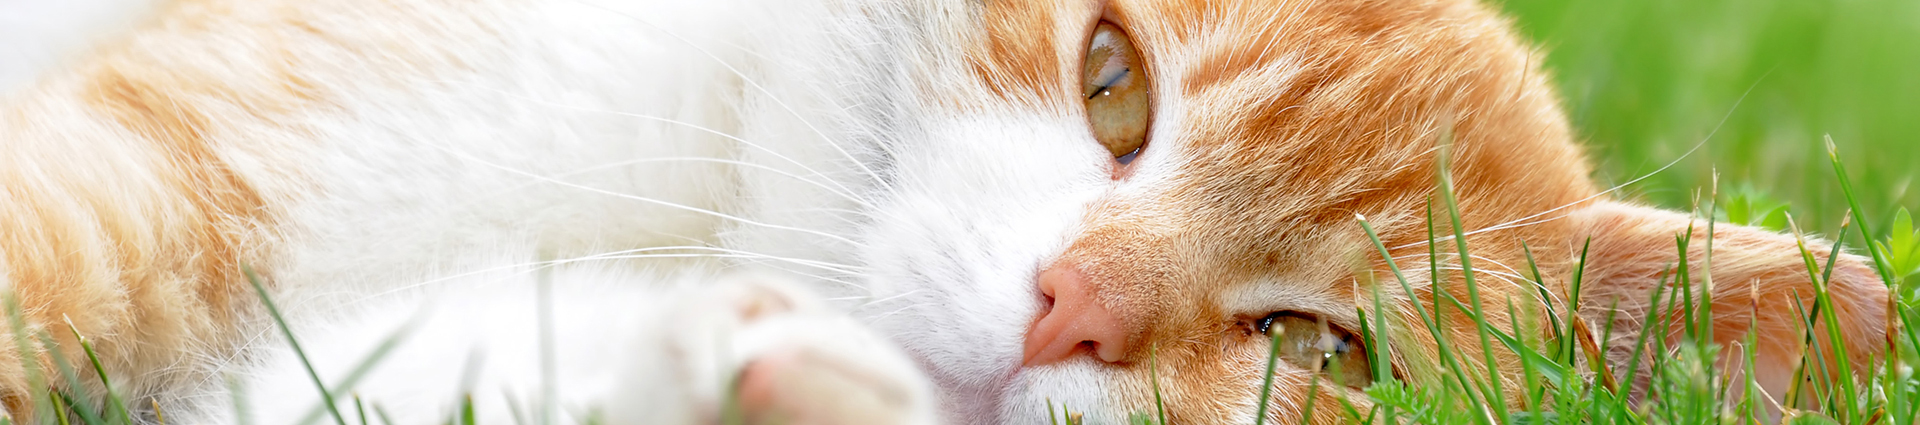 חתול בצבעים כתום ולבן שוכב על הדשא ומתבונן